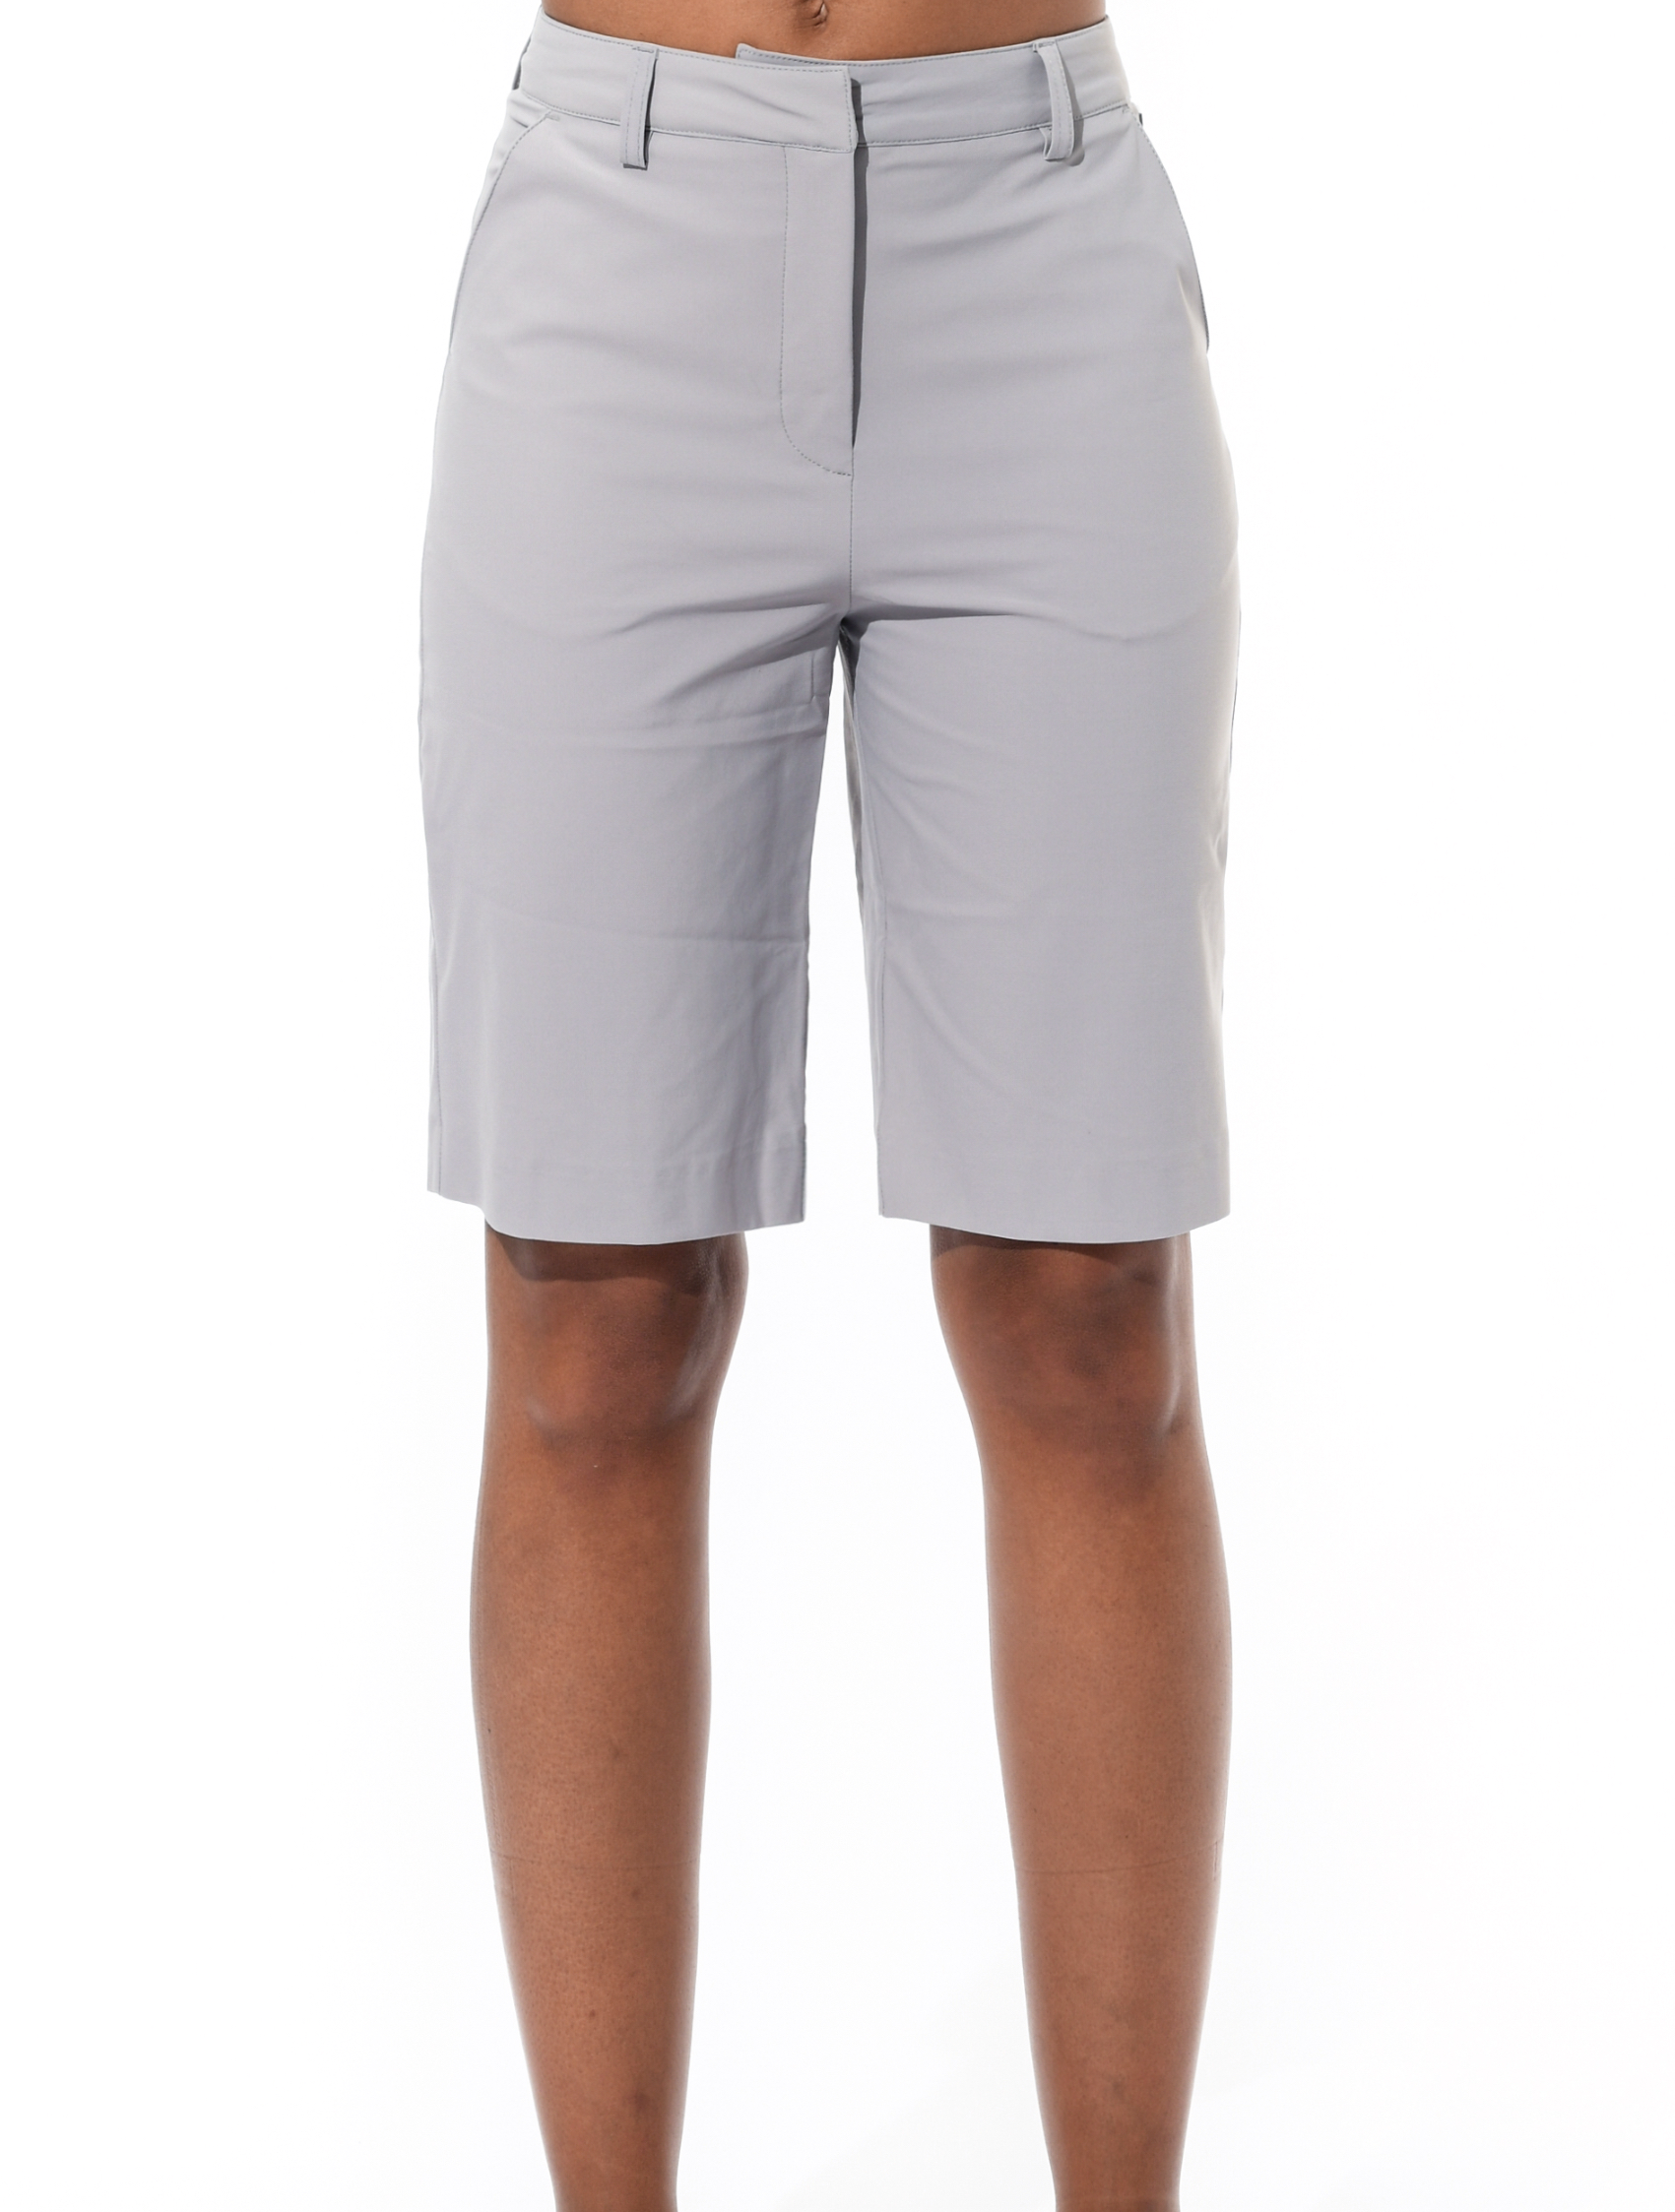 4way stretch bermuda shorts grey 